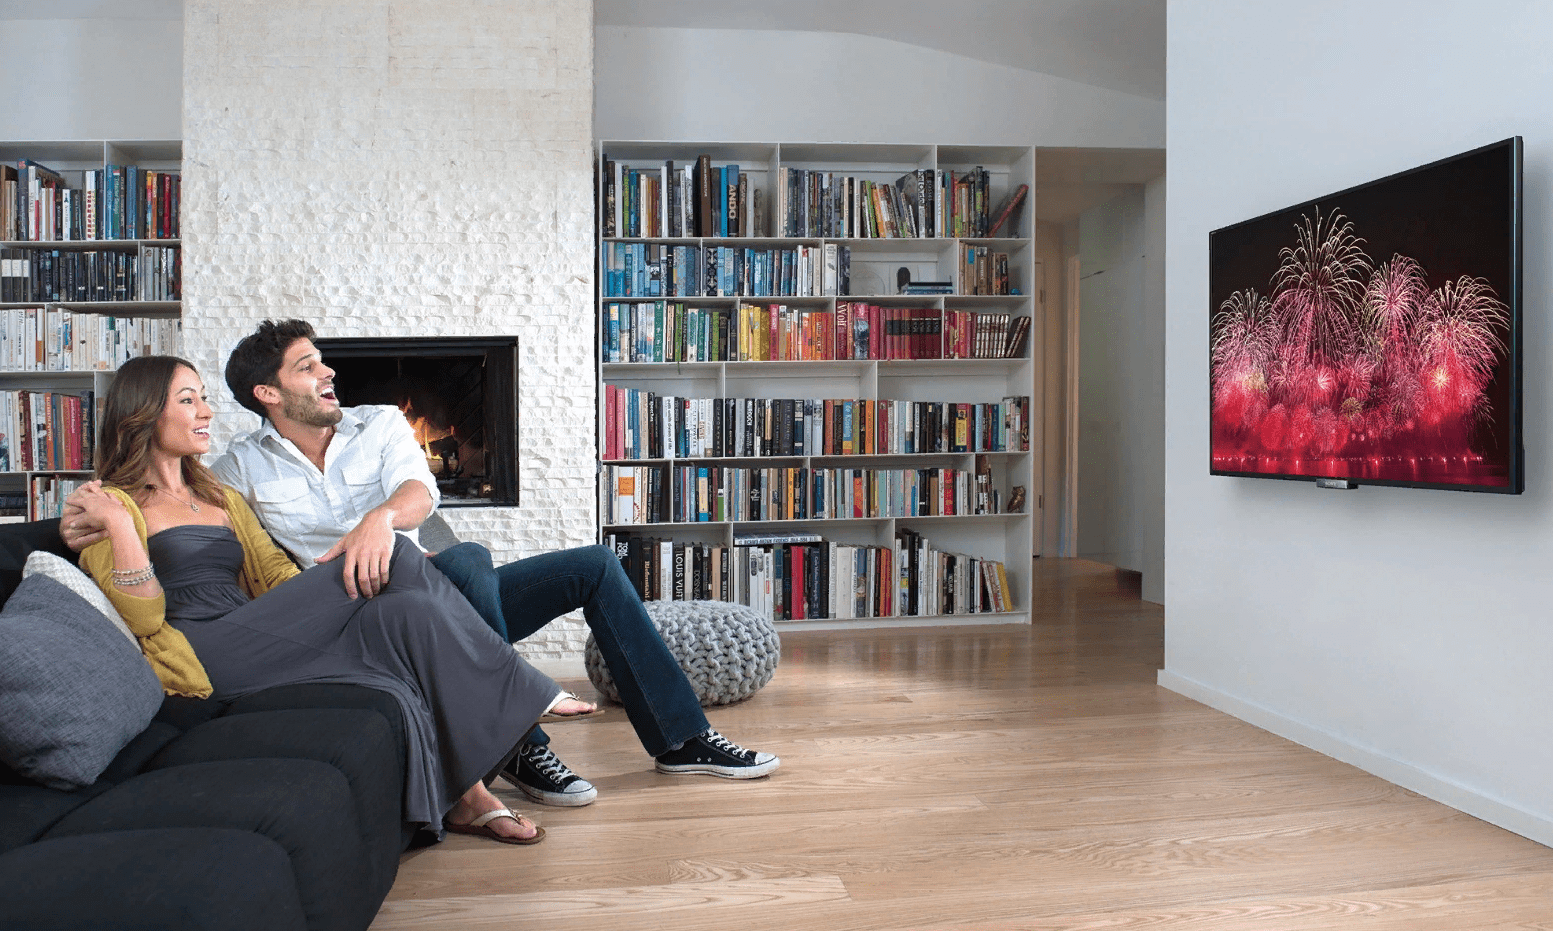 Как выбрать телевизор 4k для дома: все самое главное, что нужно знать покупателю!